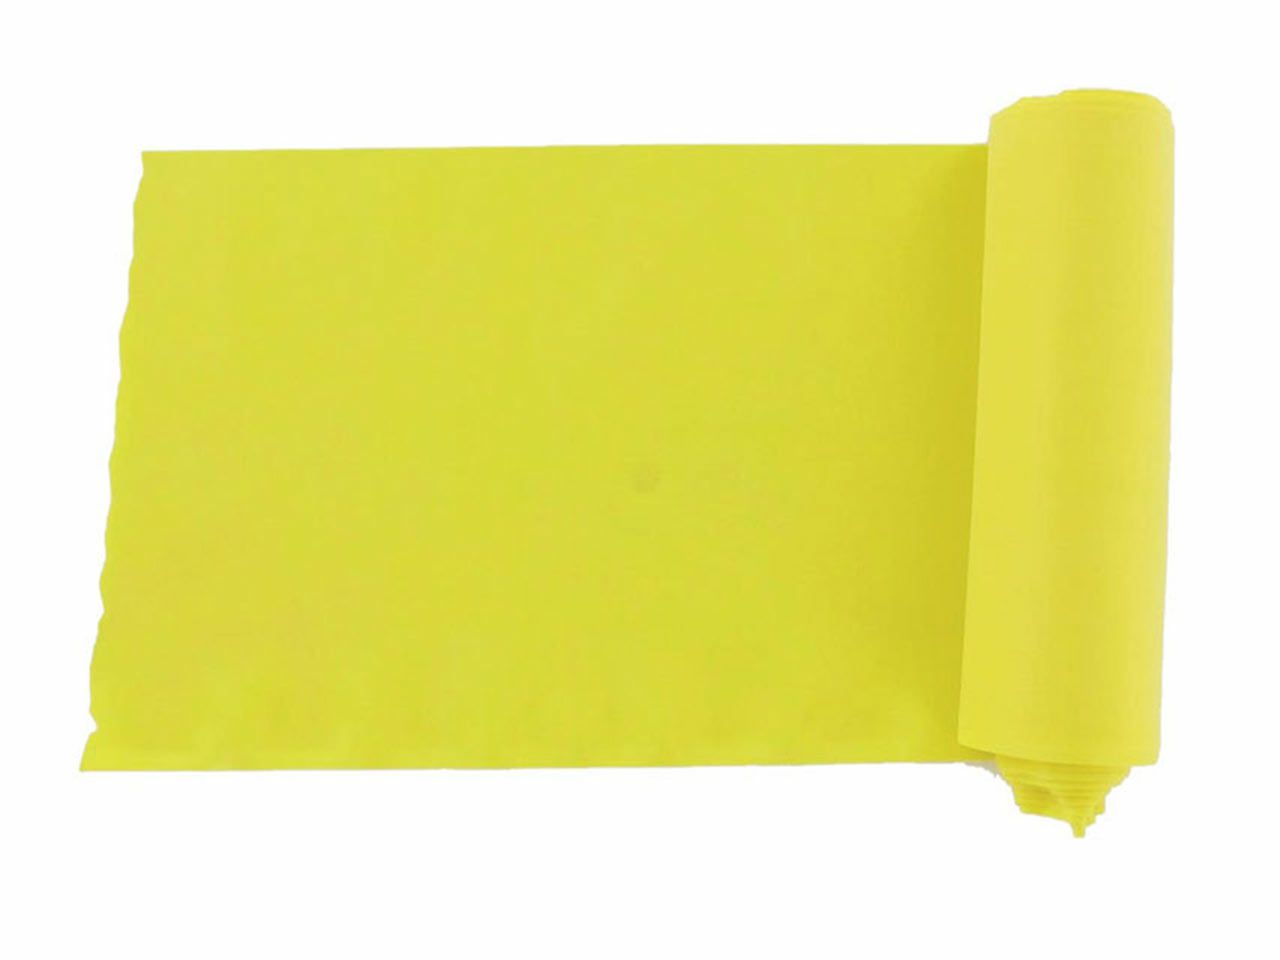 TRAKA ZA VJEŽBANJE 0.20, 5.5 m x 14 cm, žuta